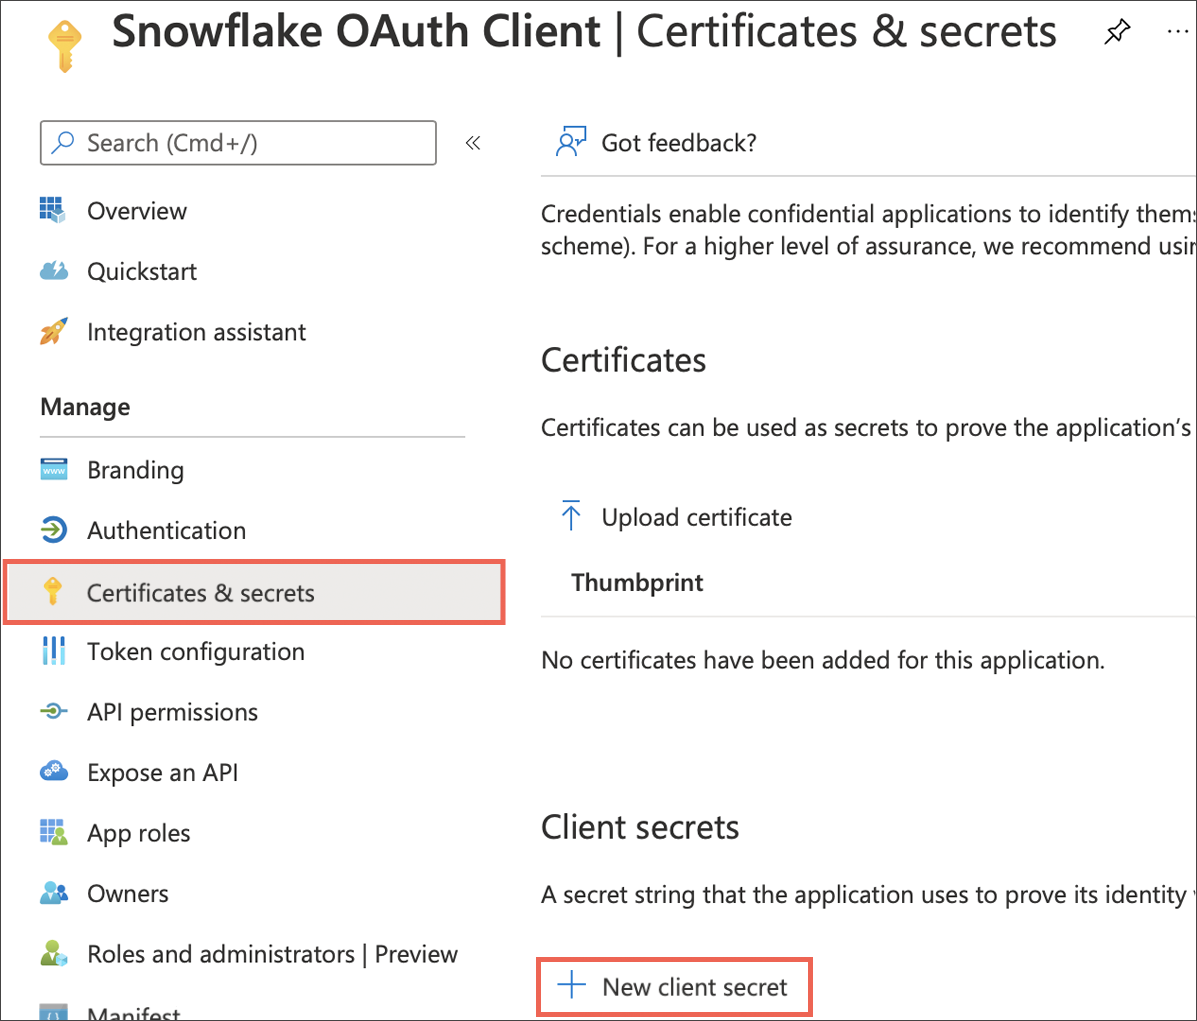 Select Certificates & secrets > New client secret